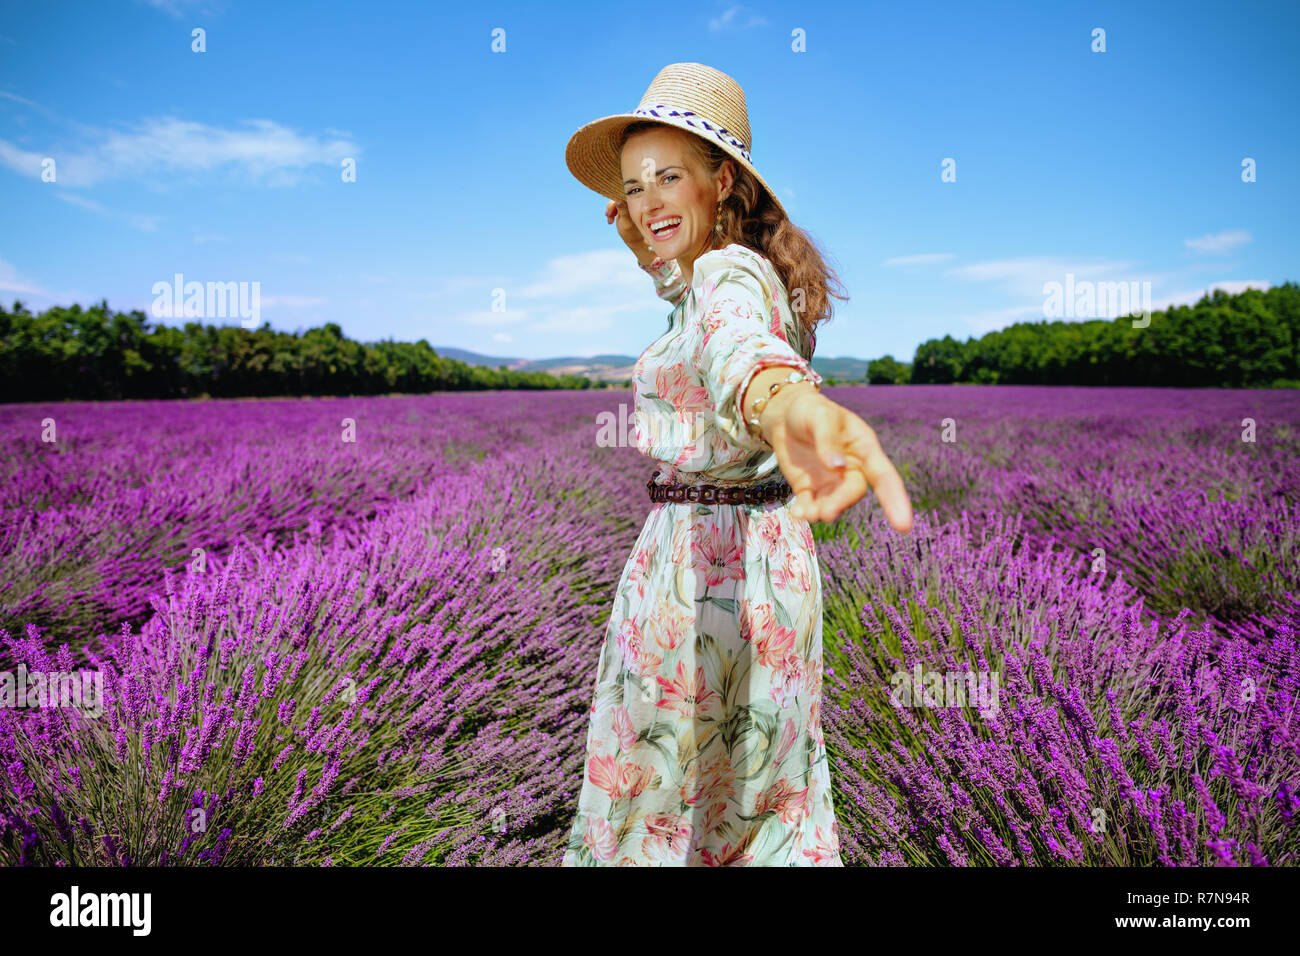 Gerne stilvolle Frau fordert ein Spaziergang gegen Lavendelfeld in der Provence, Frankreich. Gesunde Promenade an der Bunten ländliche Seite der südlichen Region des Fra Stockfoto